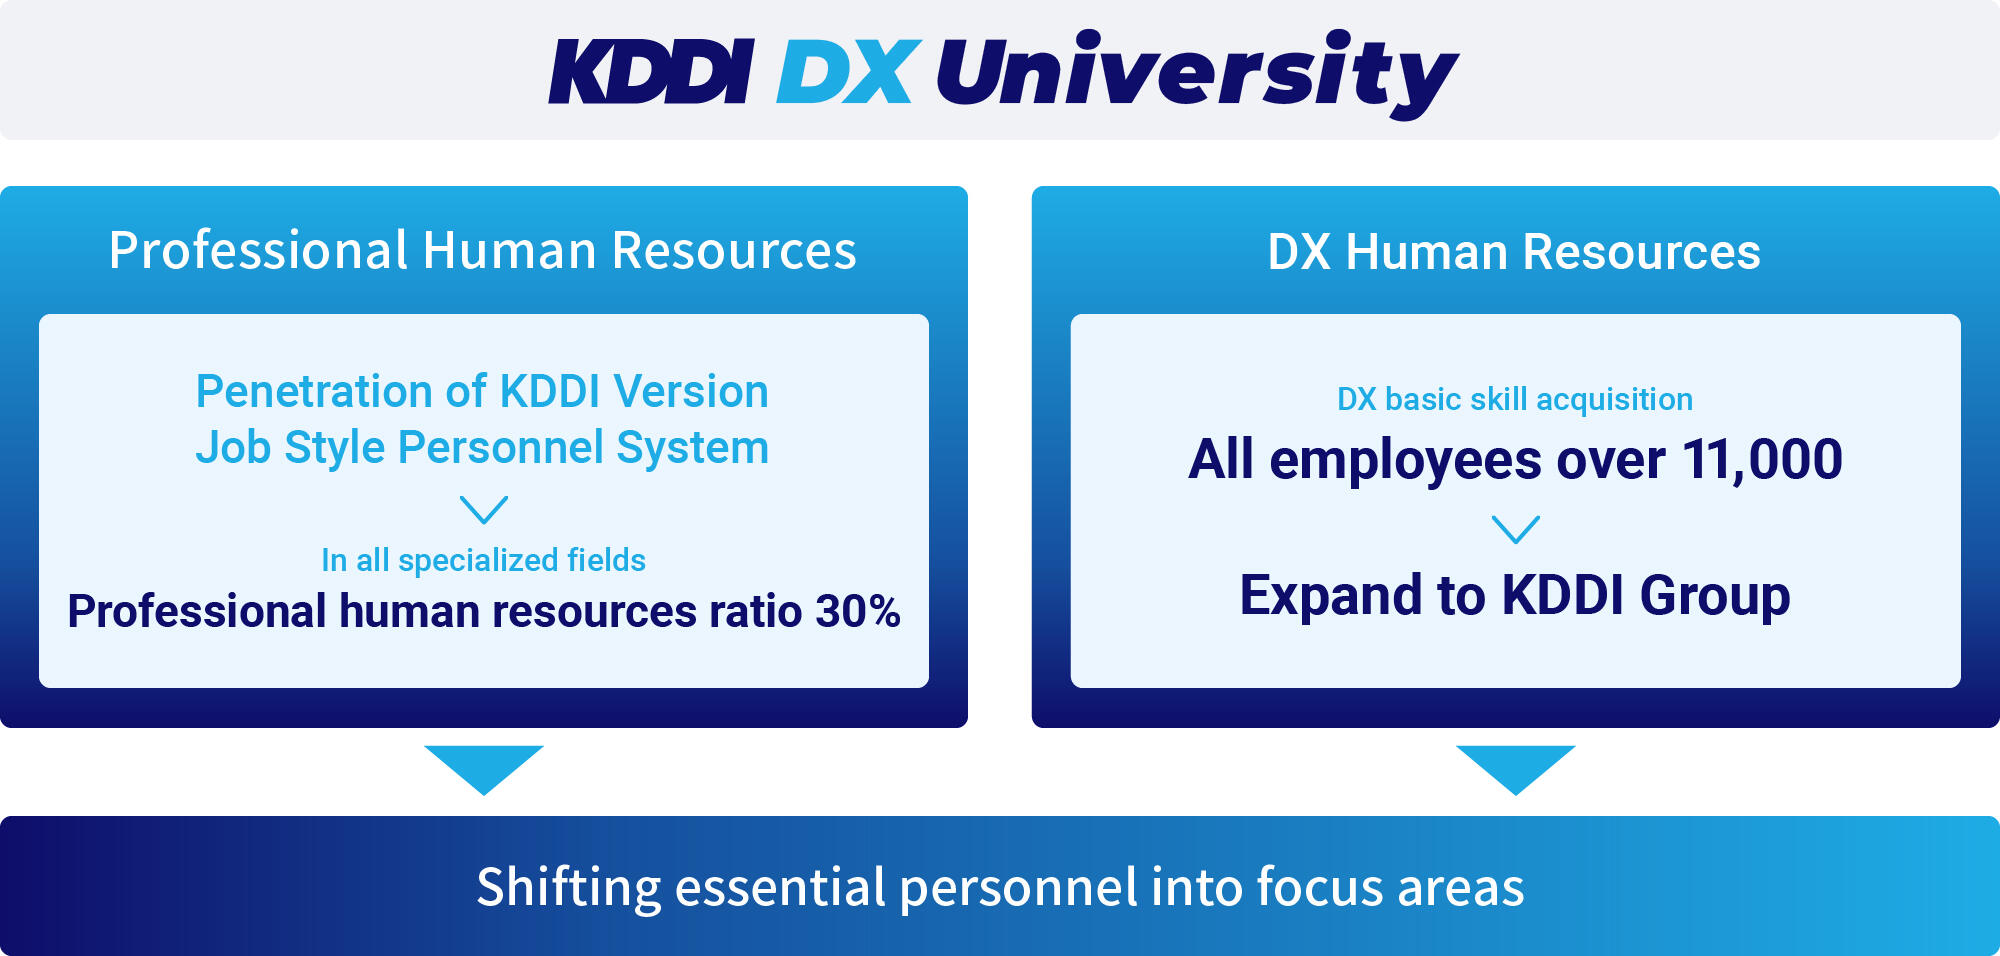 KDDI DX University